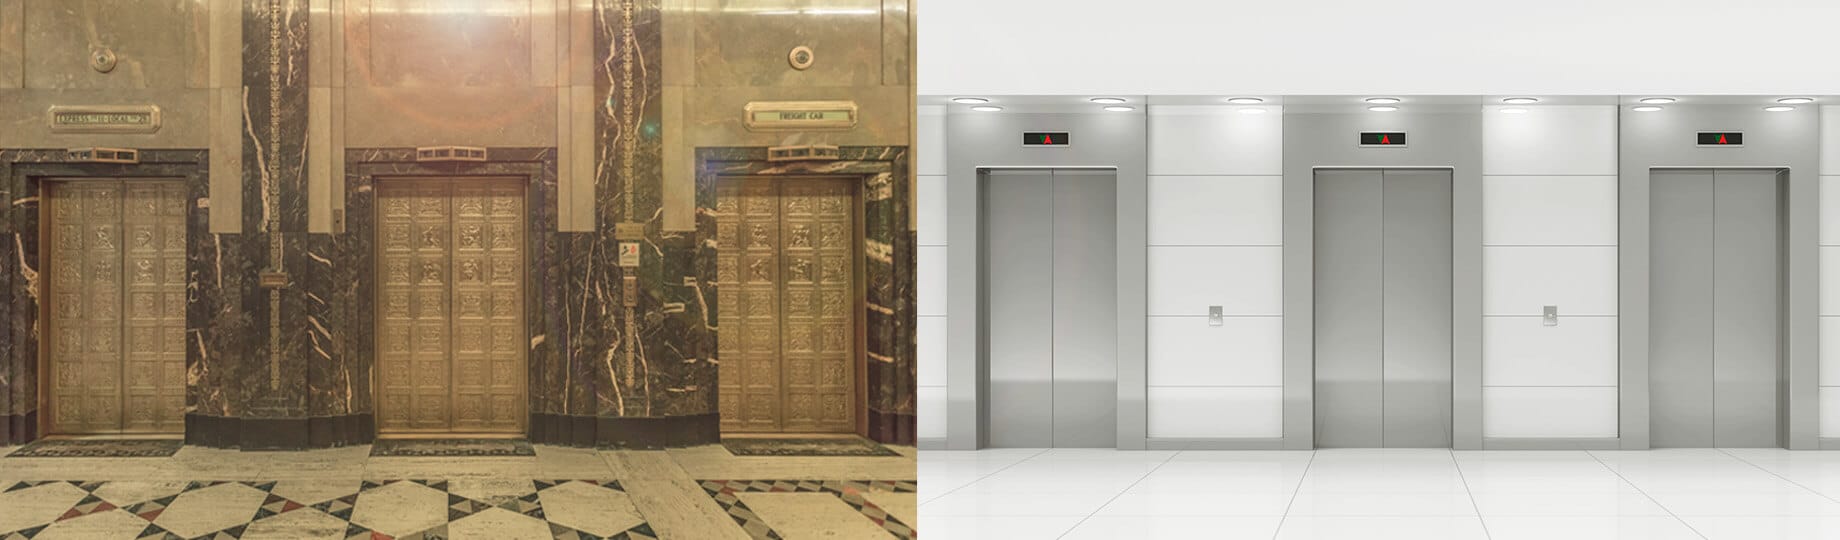 Comparação de elevadores apresentando a modernização de elevador